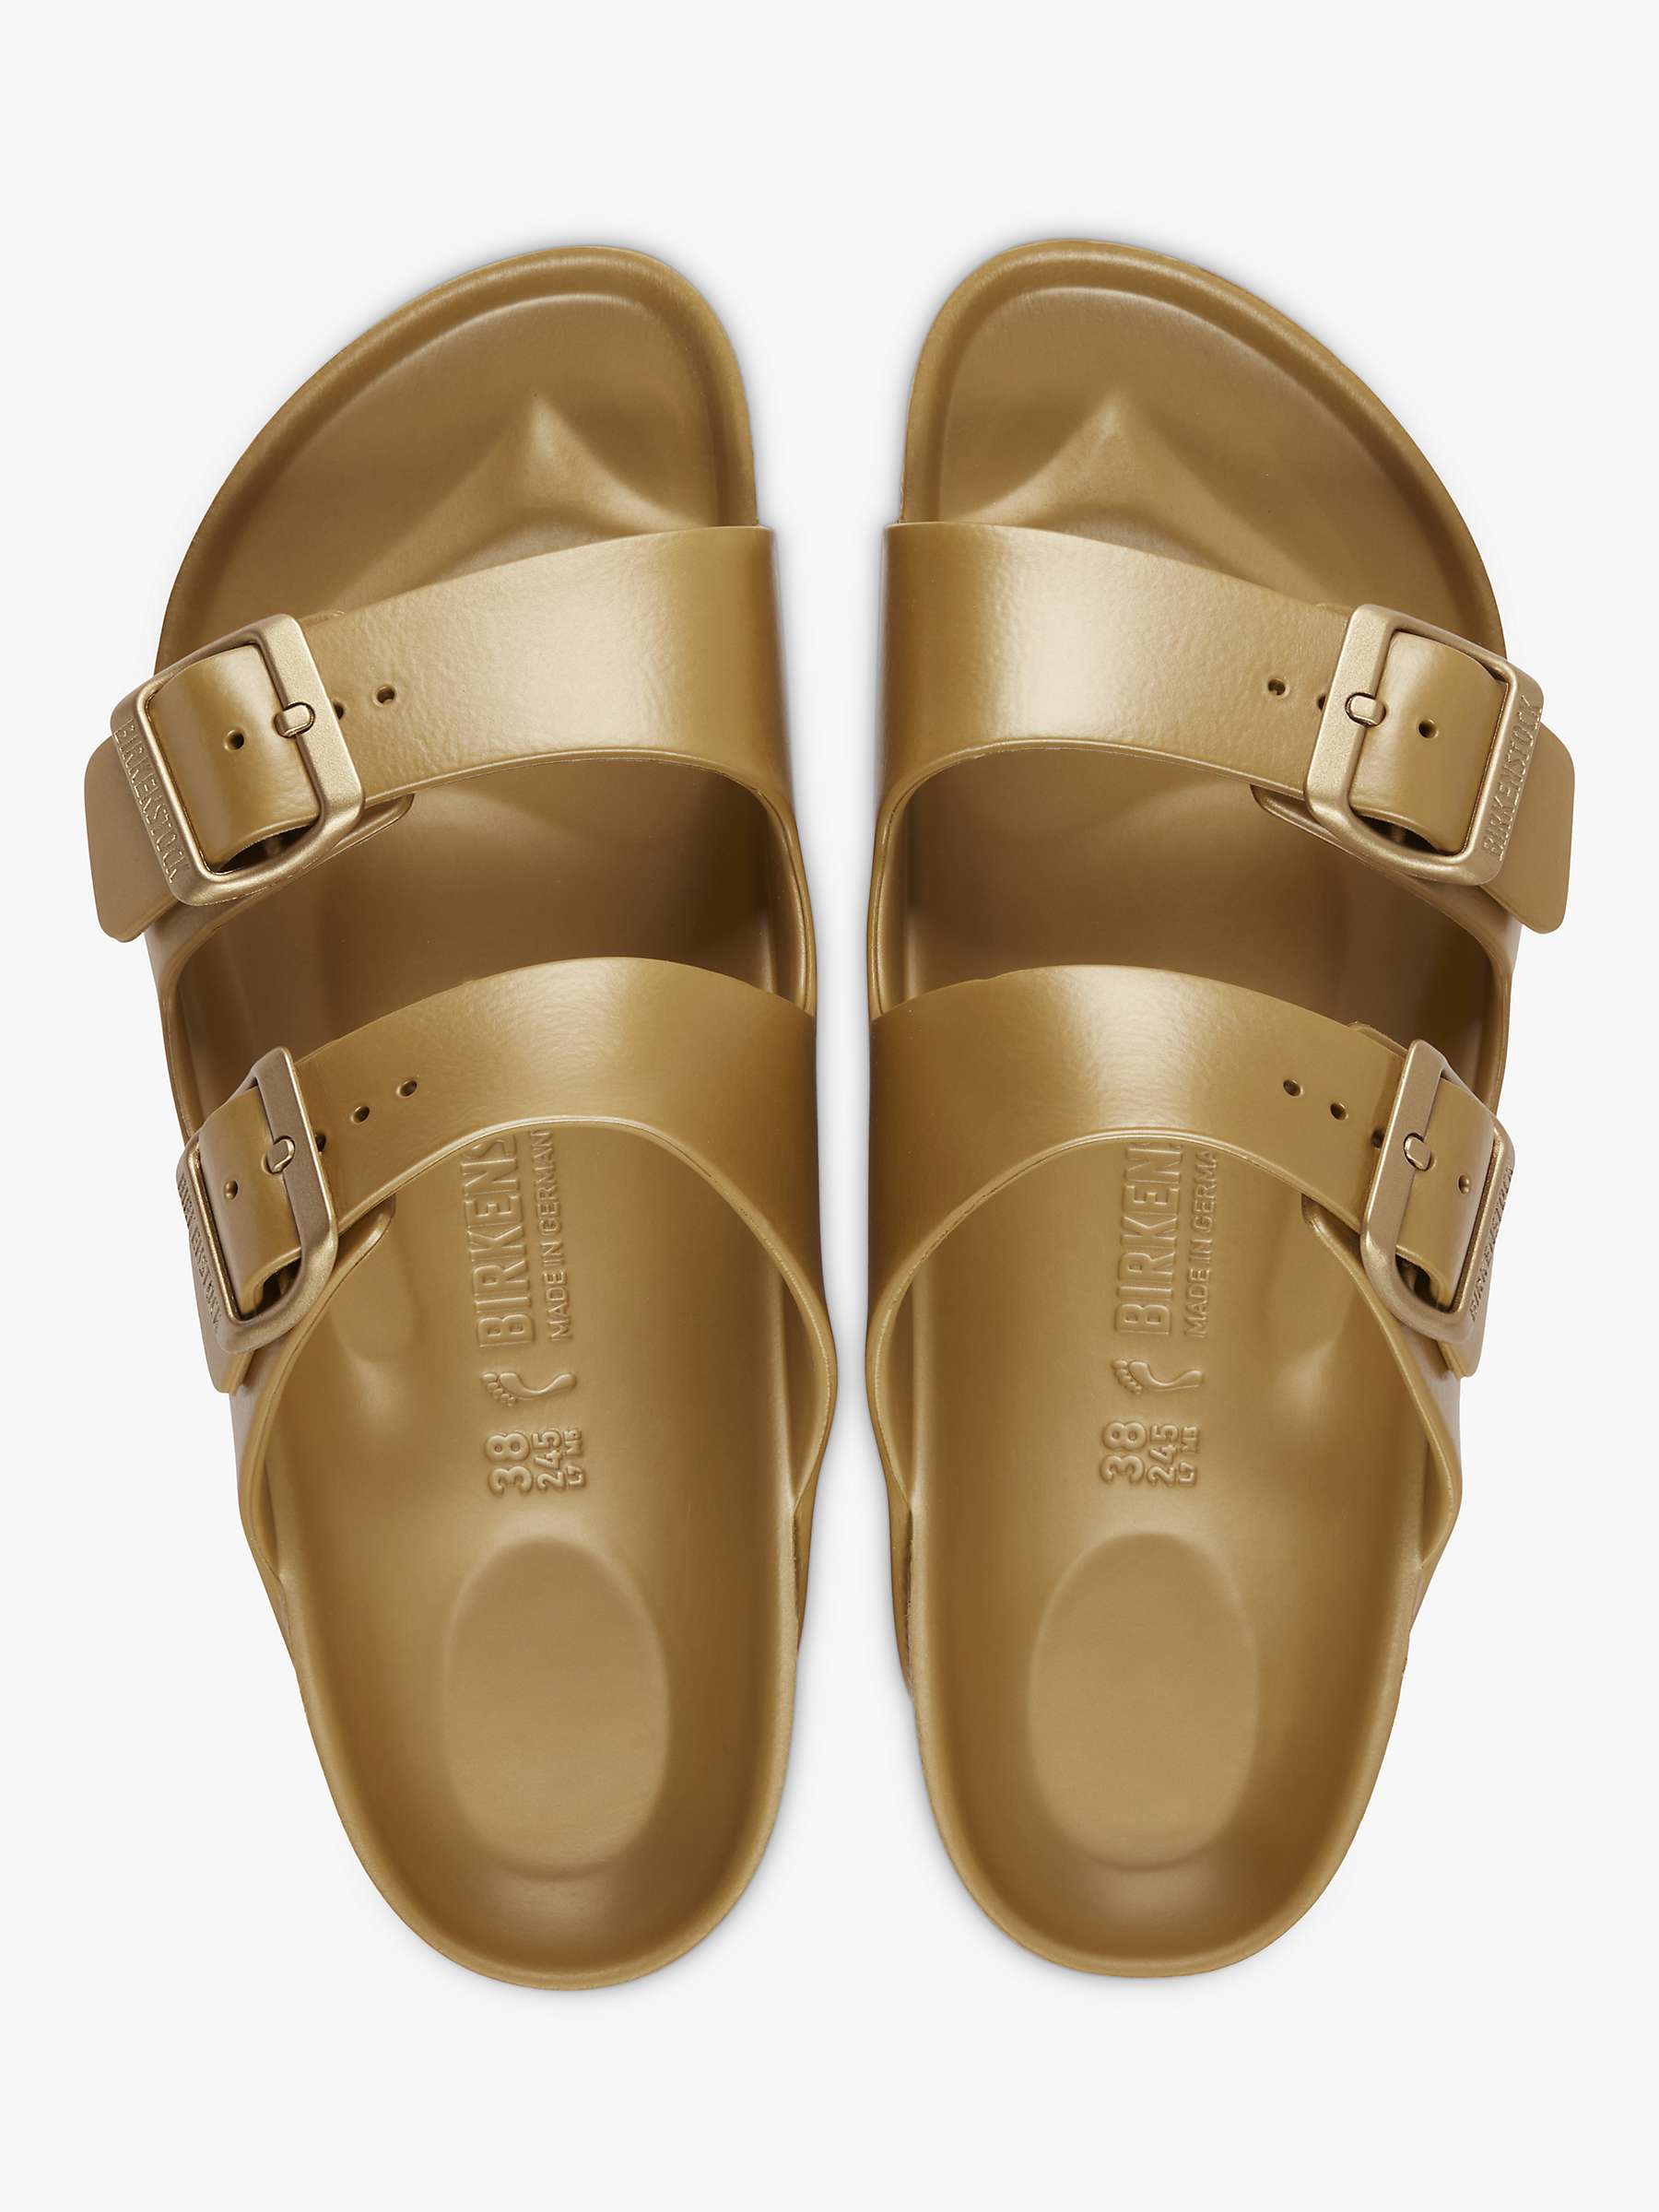 Buy Birkenstock Arizona EVA Double Strap Sandals Online at johnlewis.com